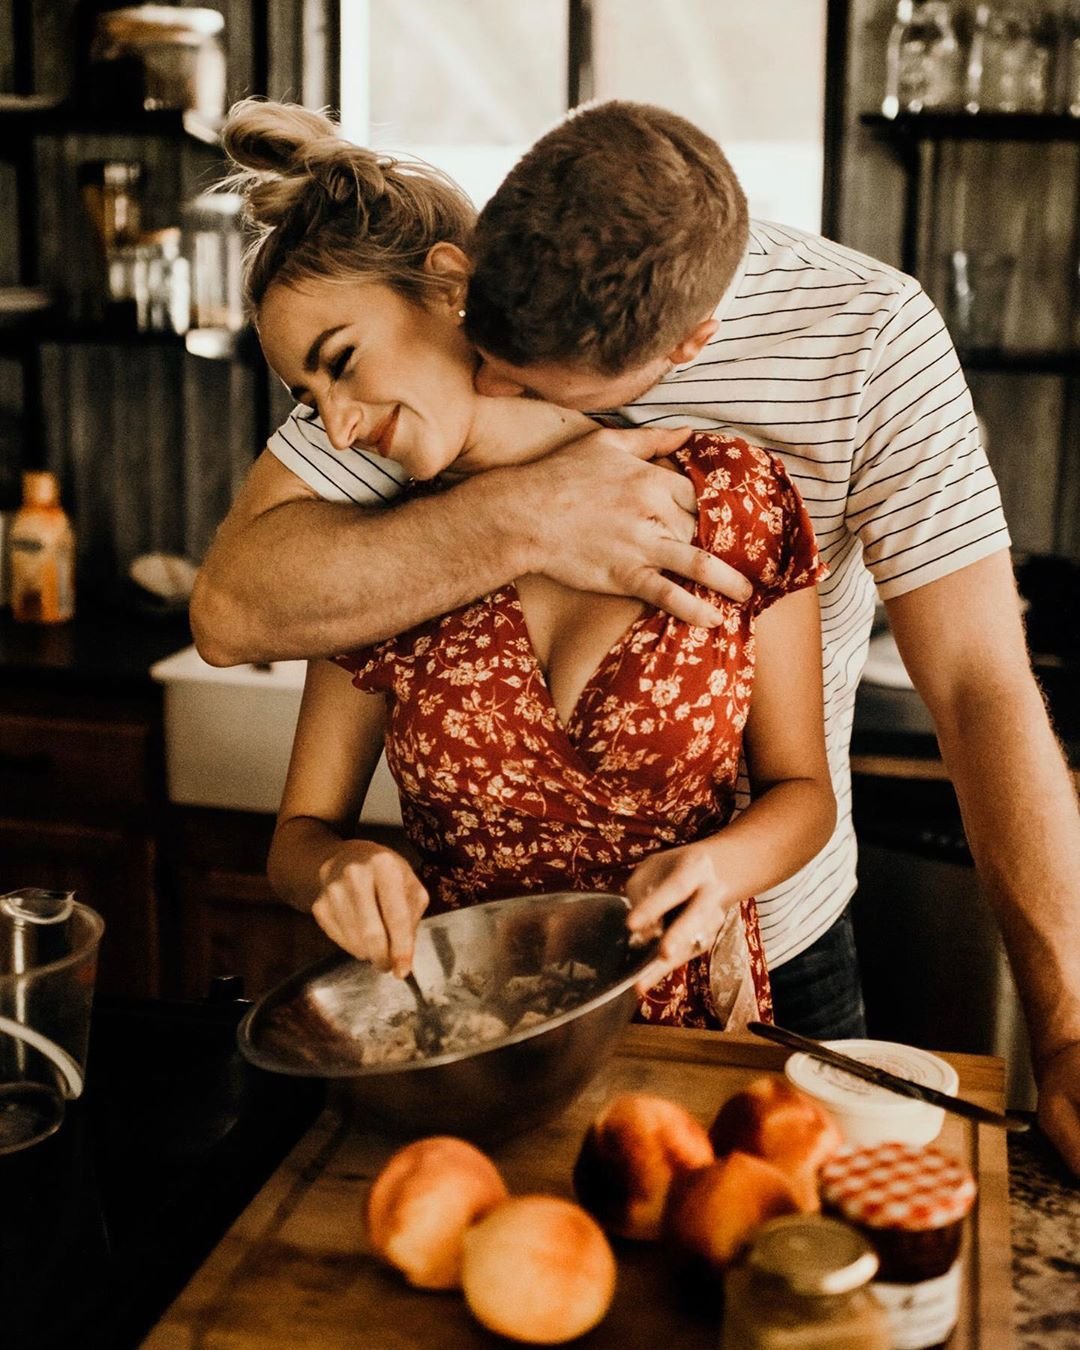 Обед влюбленных. Влюбленные на кухне. Мужчина и женщина на кухне. Романтические поступки. Страсть на кухне.